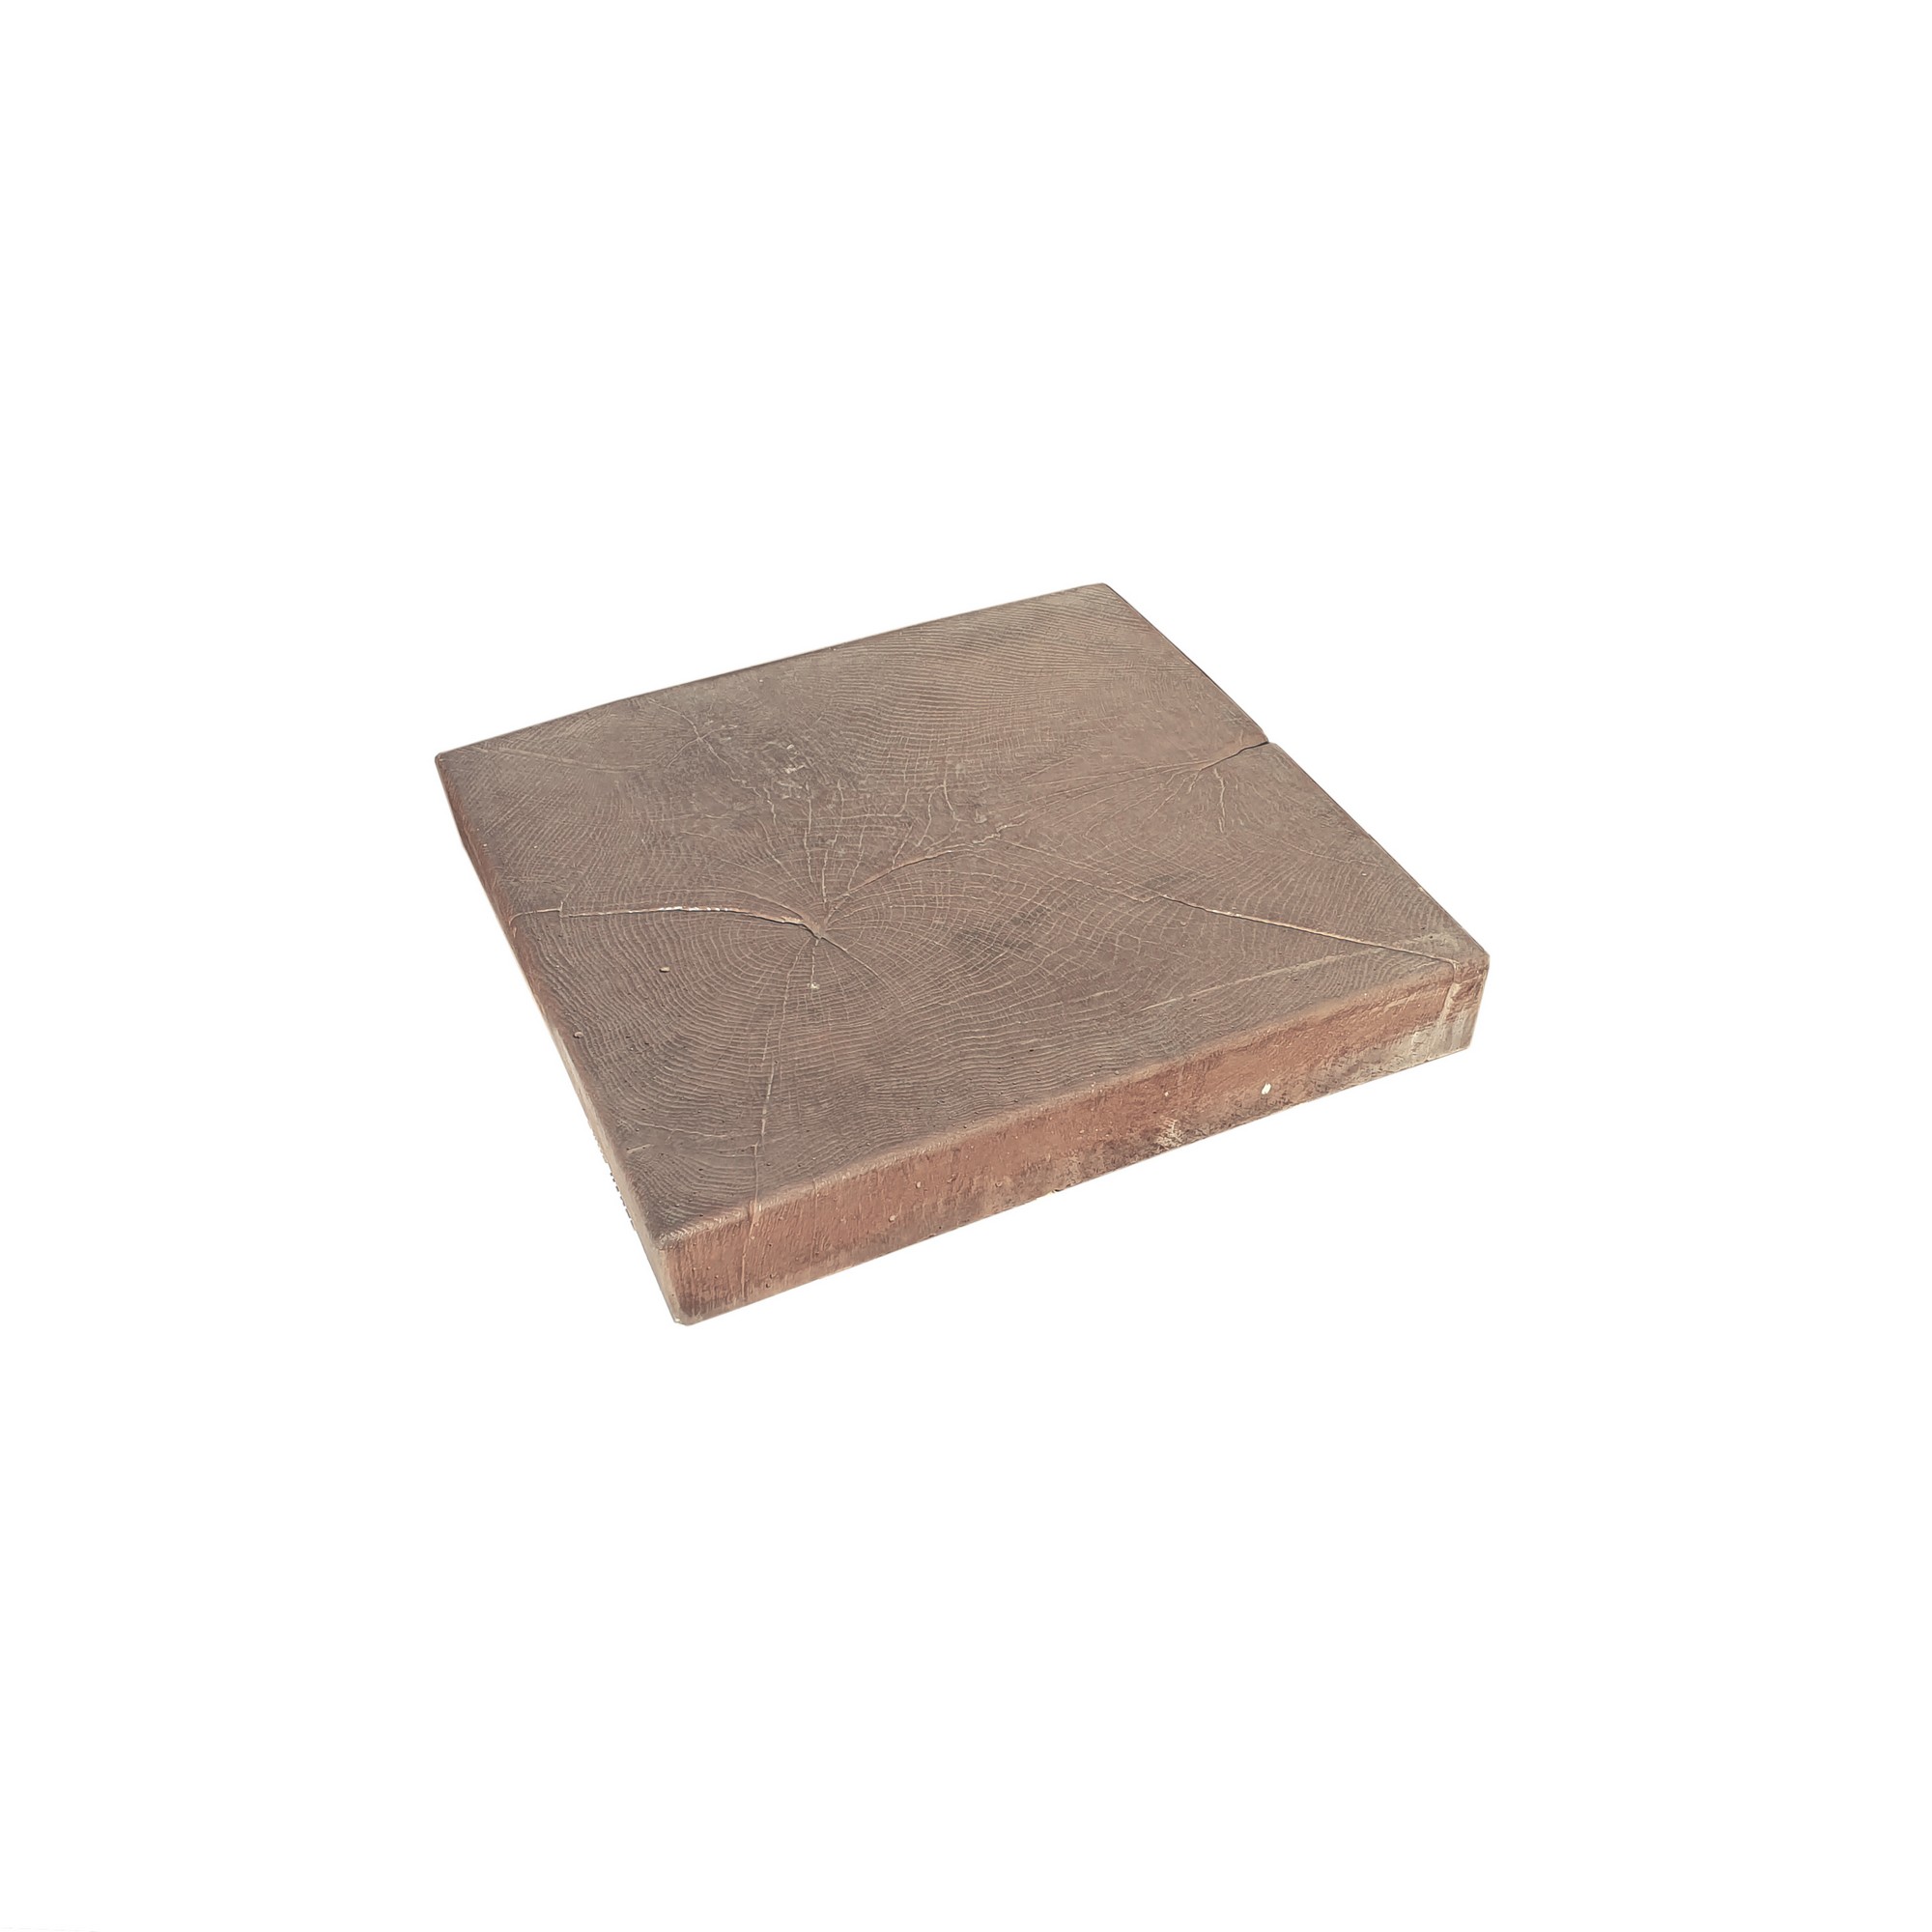 Dlažba betonová Presbeton BARK 12 reliéfní pařez hnědá 400×400×60 mm PRESBETON